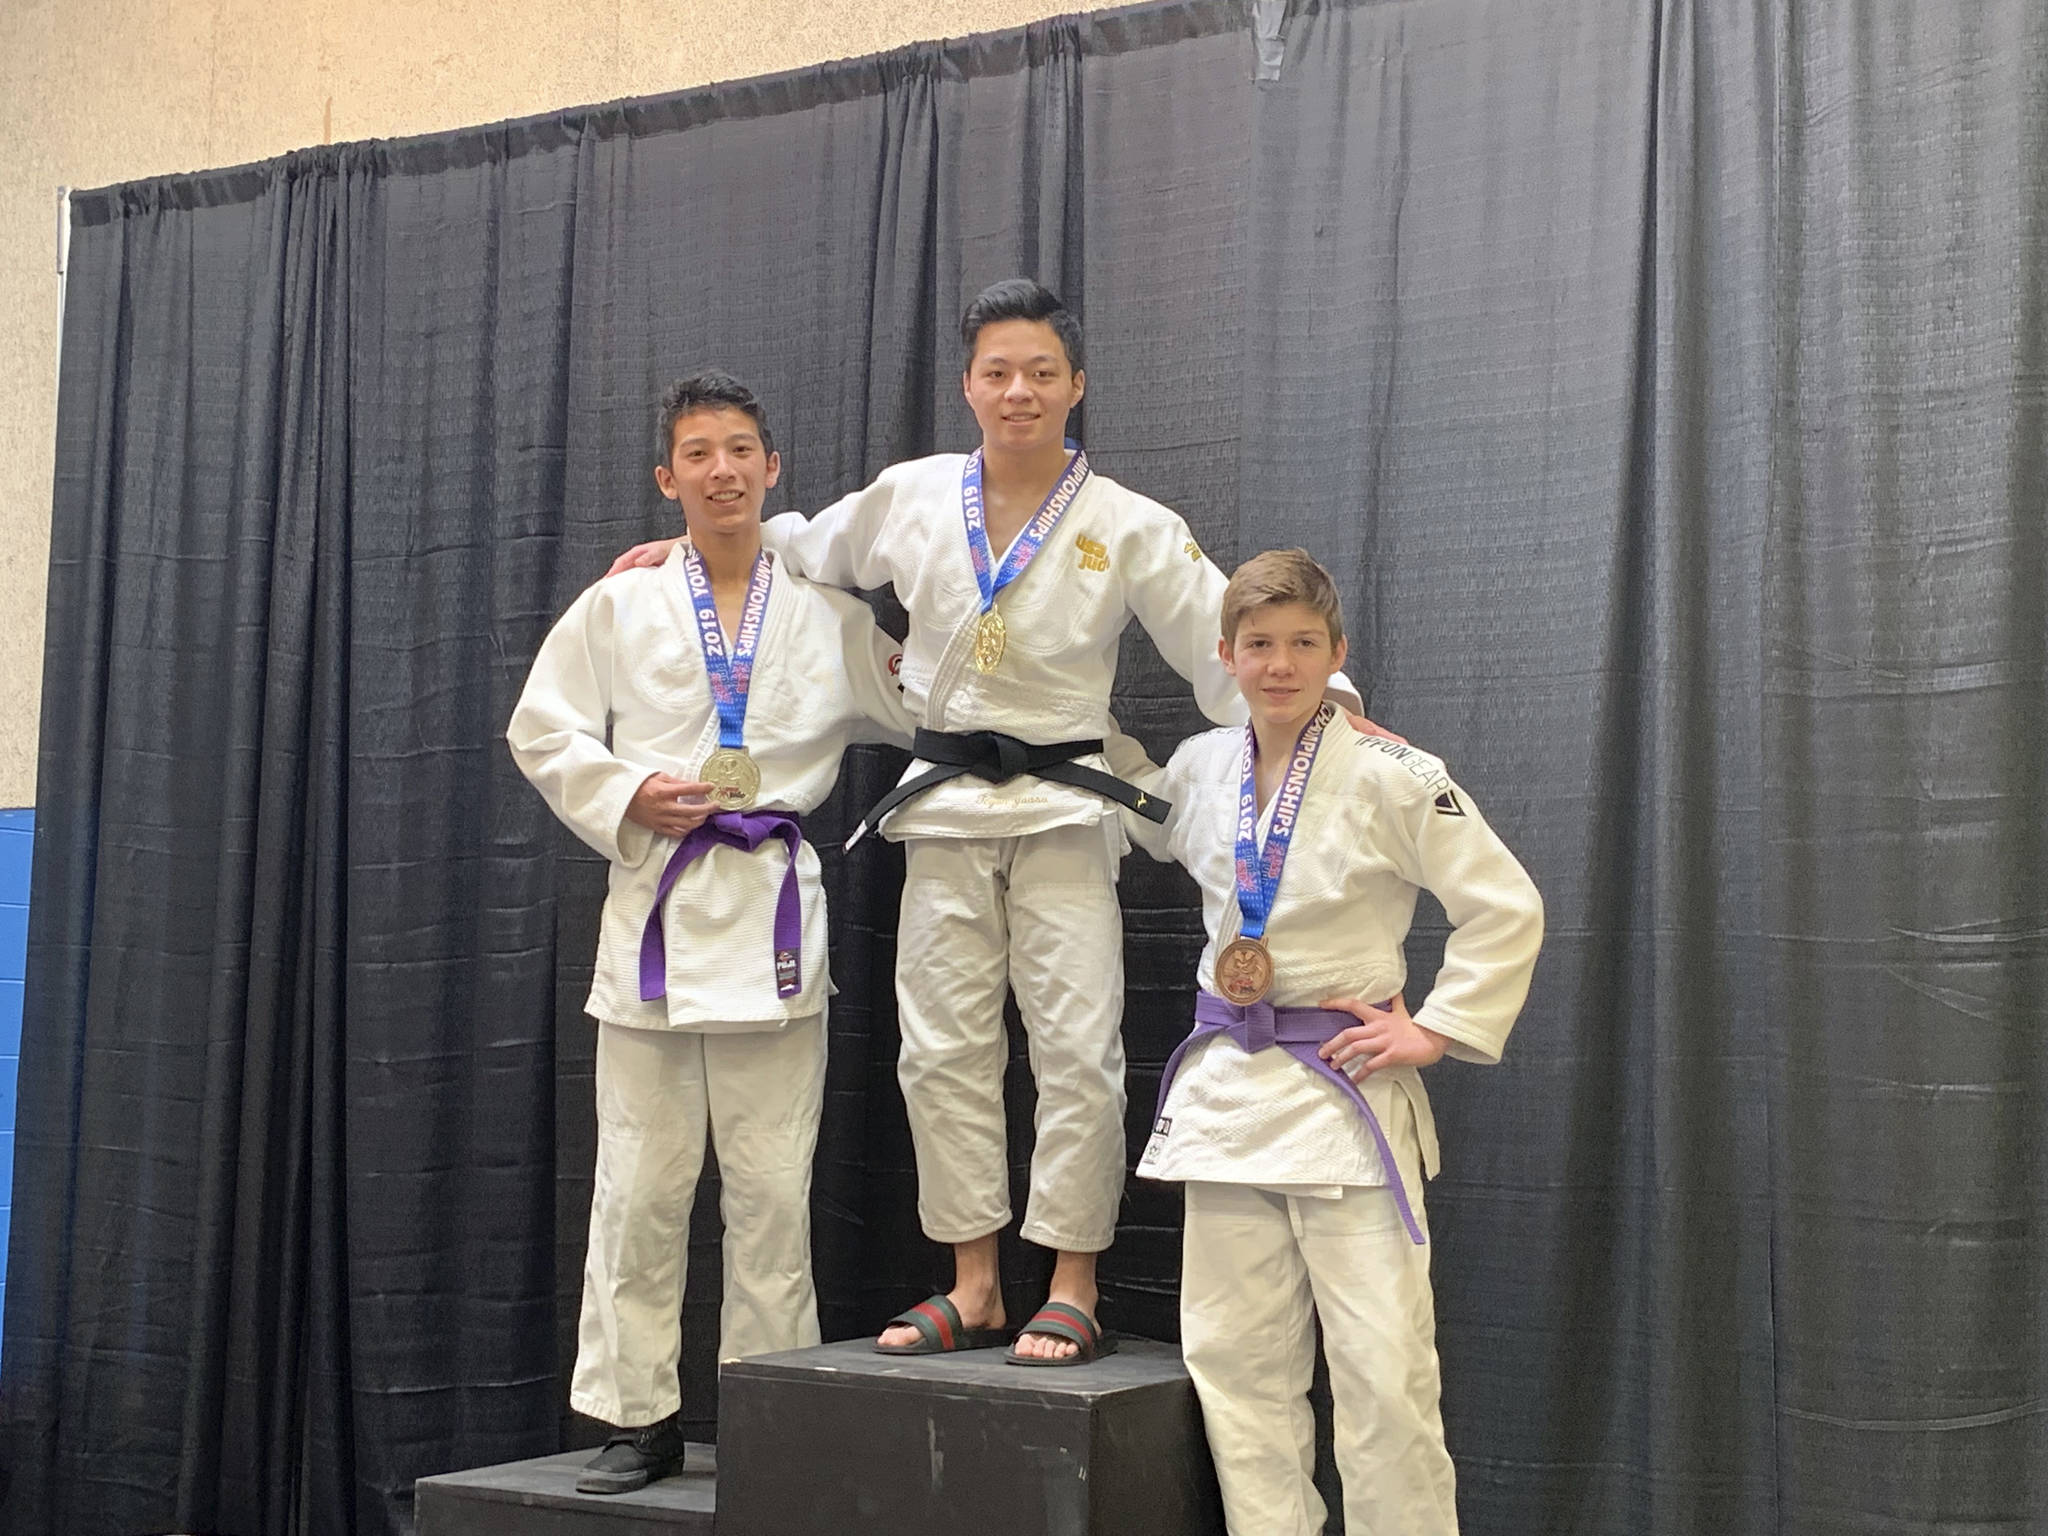 Yuasa wins judo gold medal at national championships Mercer Island